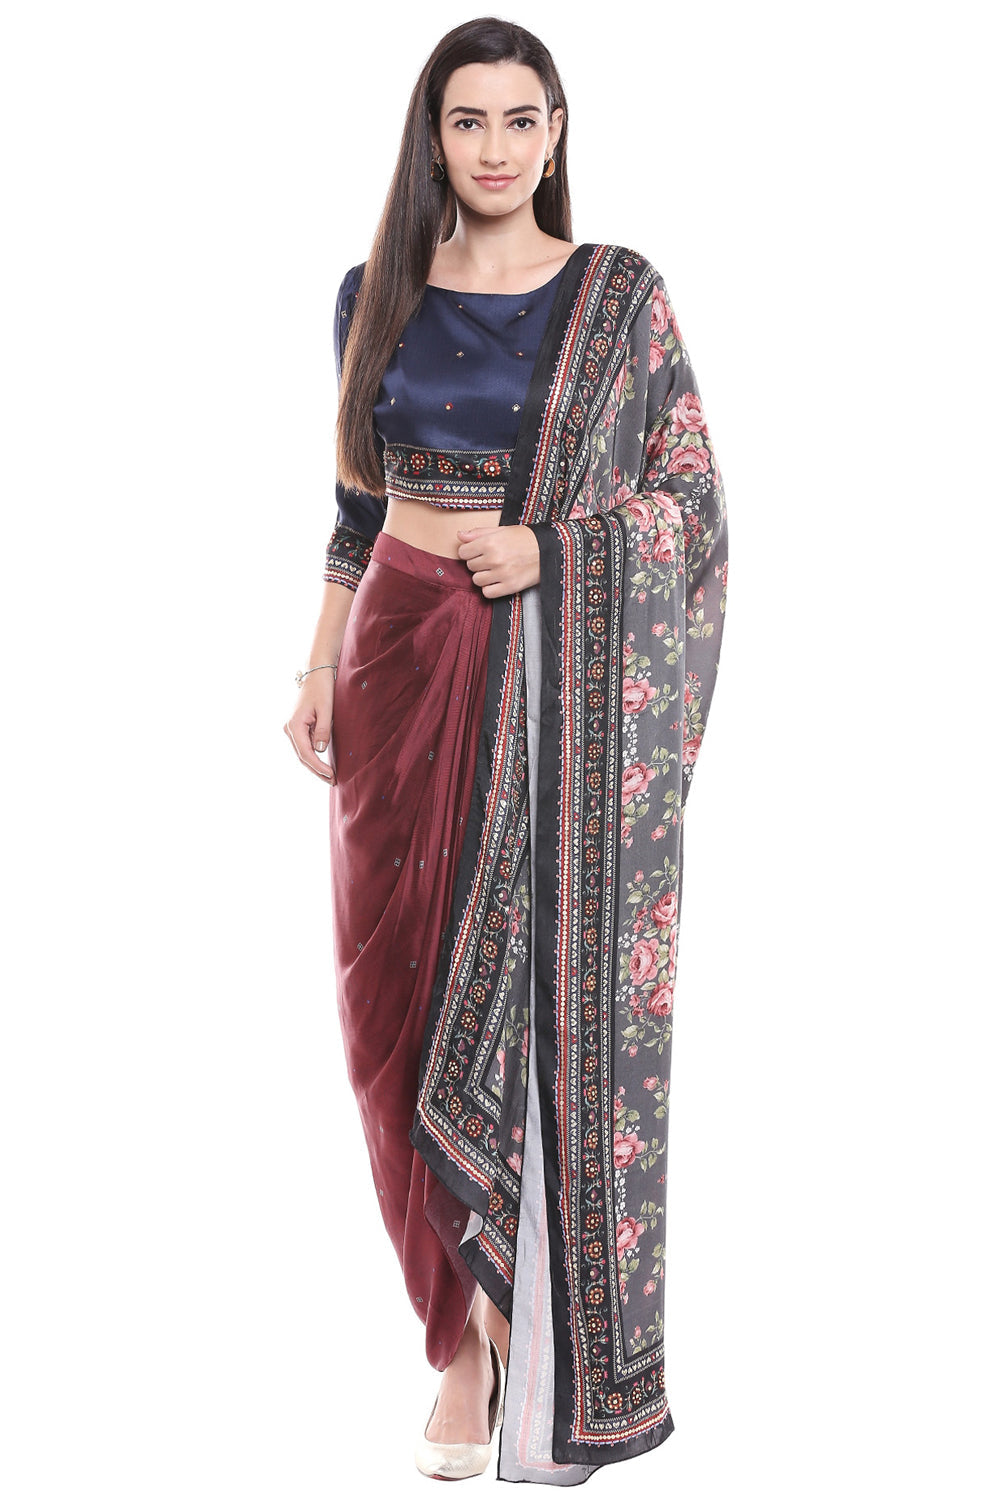 Madhubani Printed Crop Top And Drape Skirt